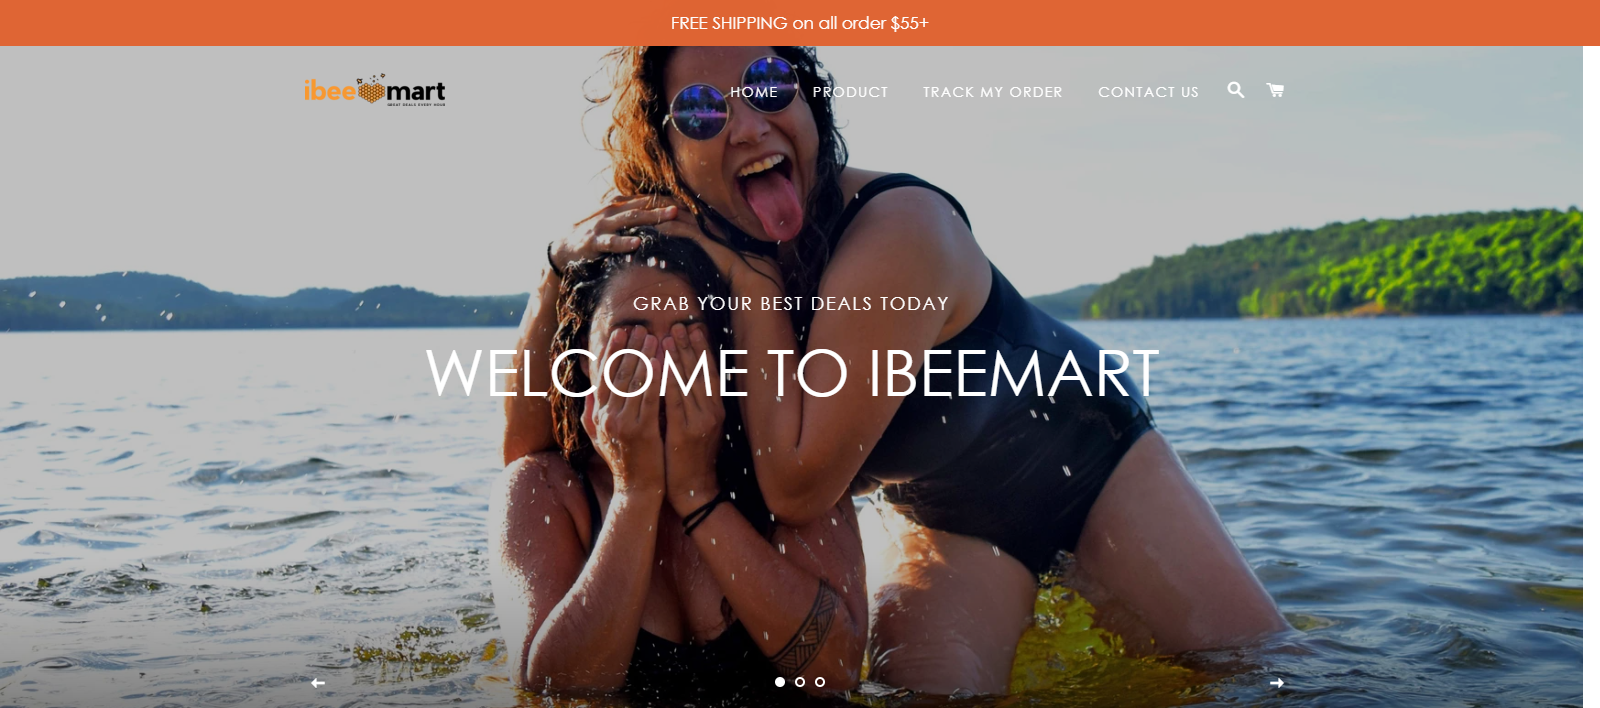 Ibeemart Homepage Image